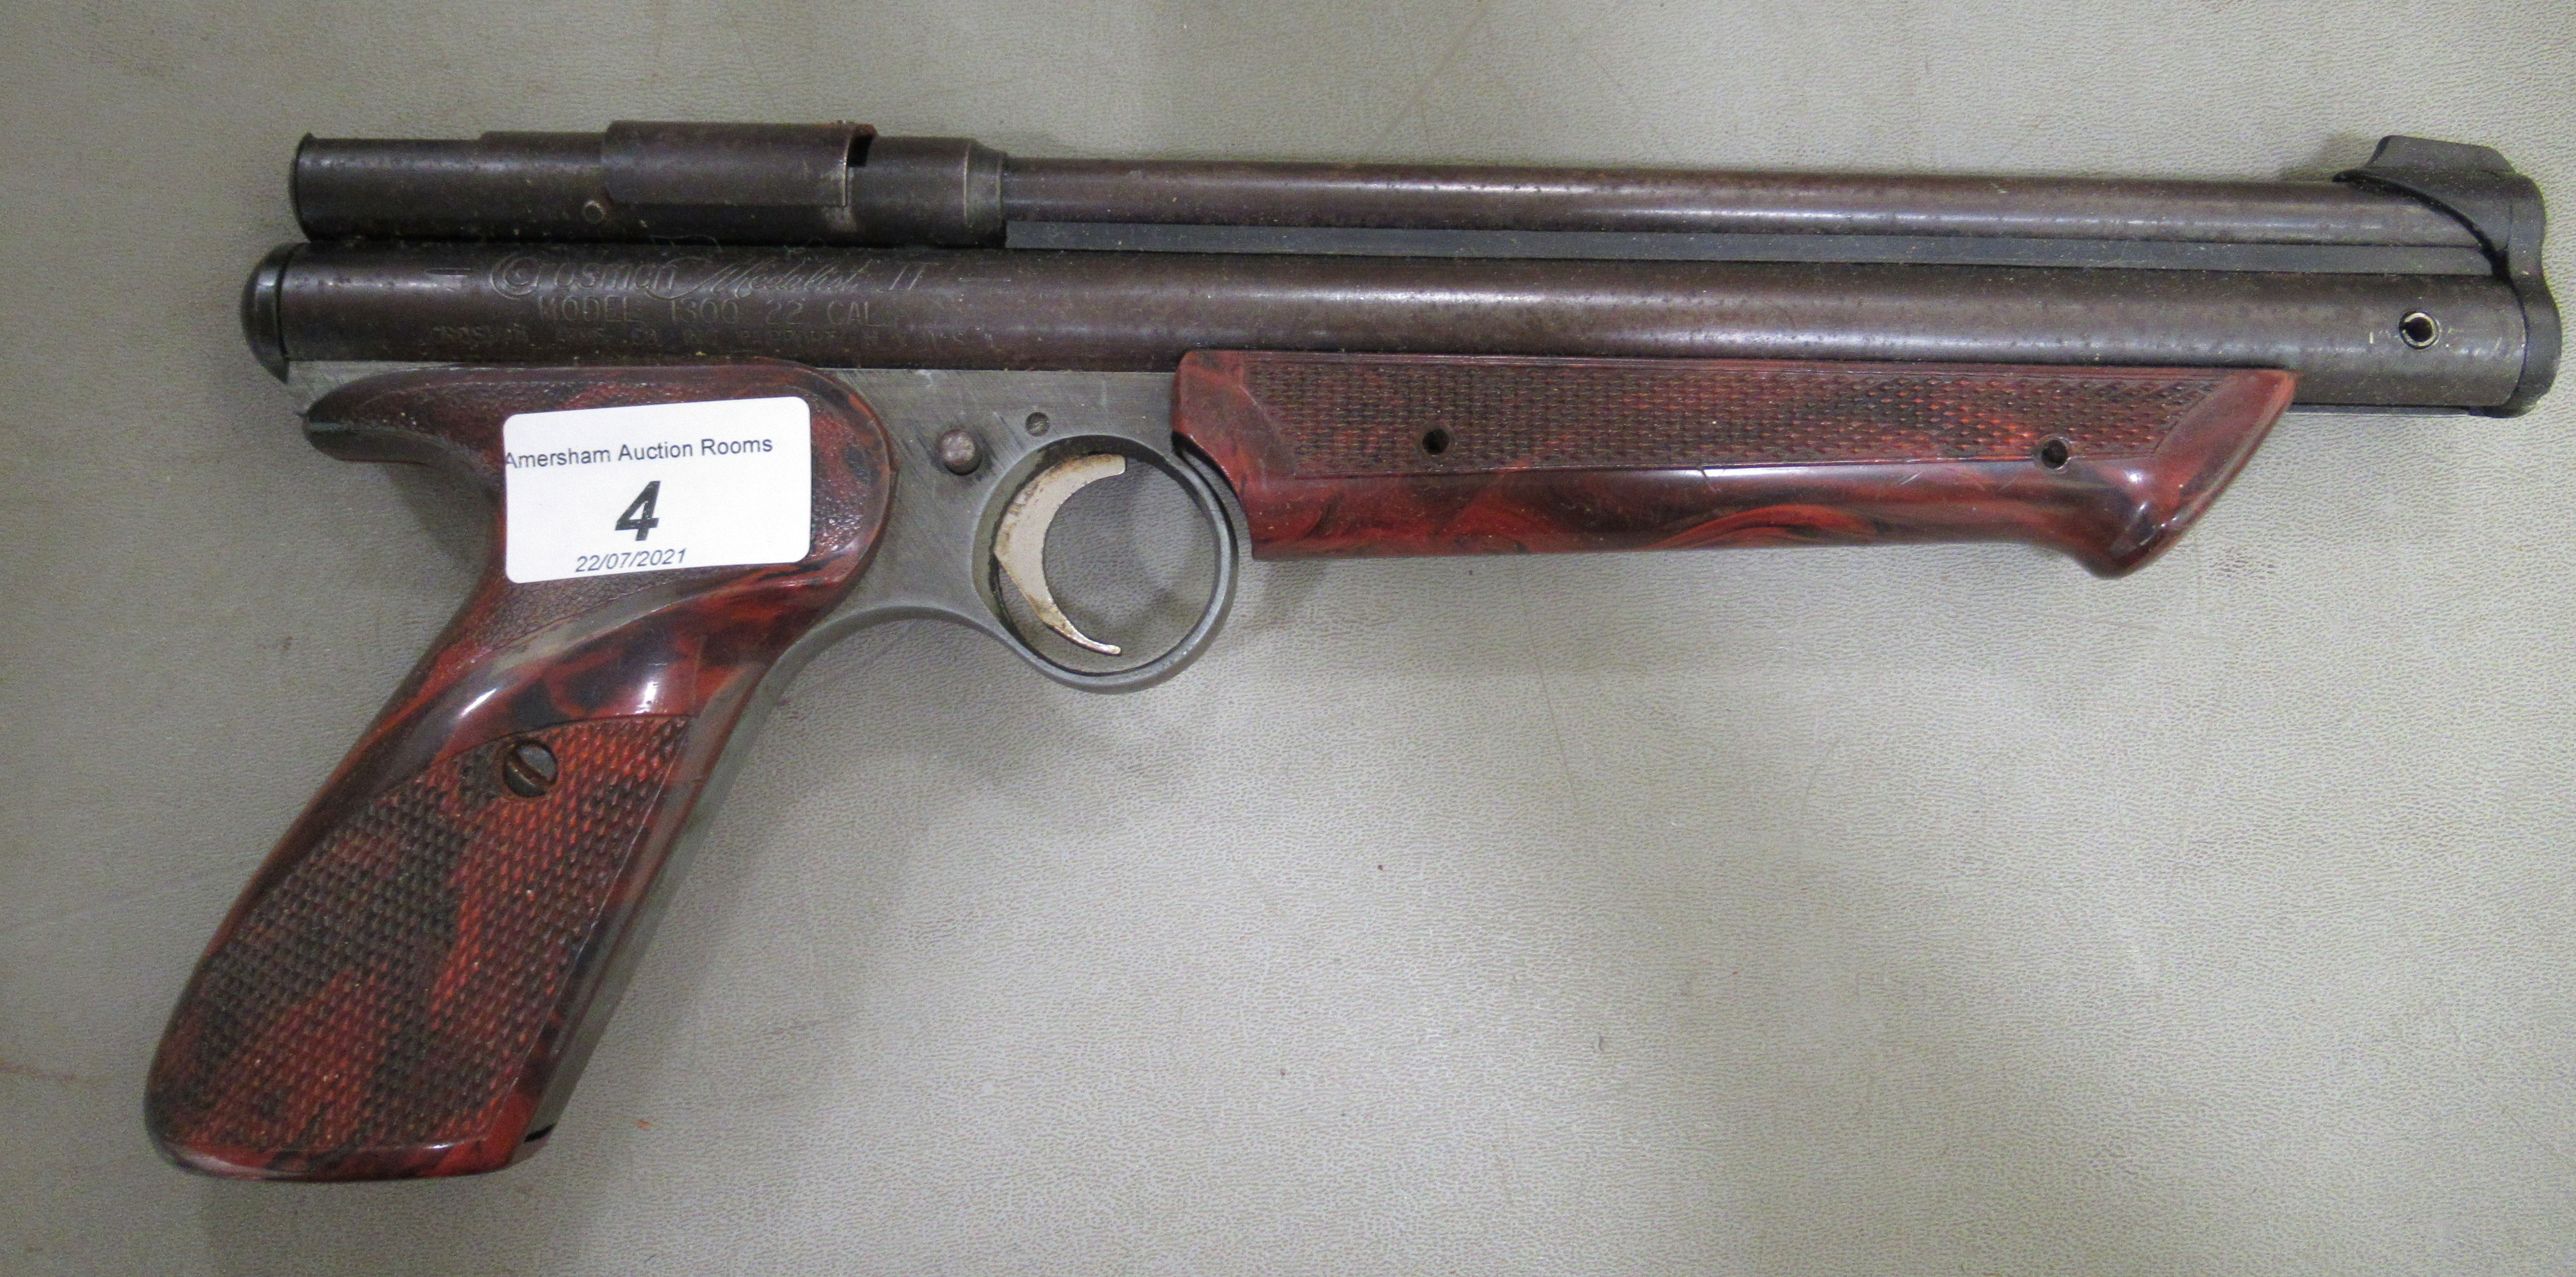 A Crossman Medalist II, model 1300 .22 calibre air pistol